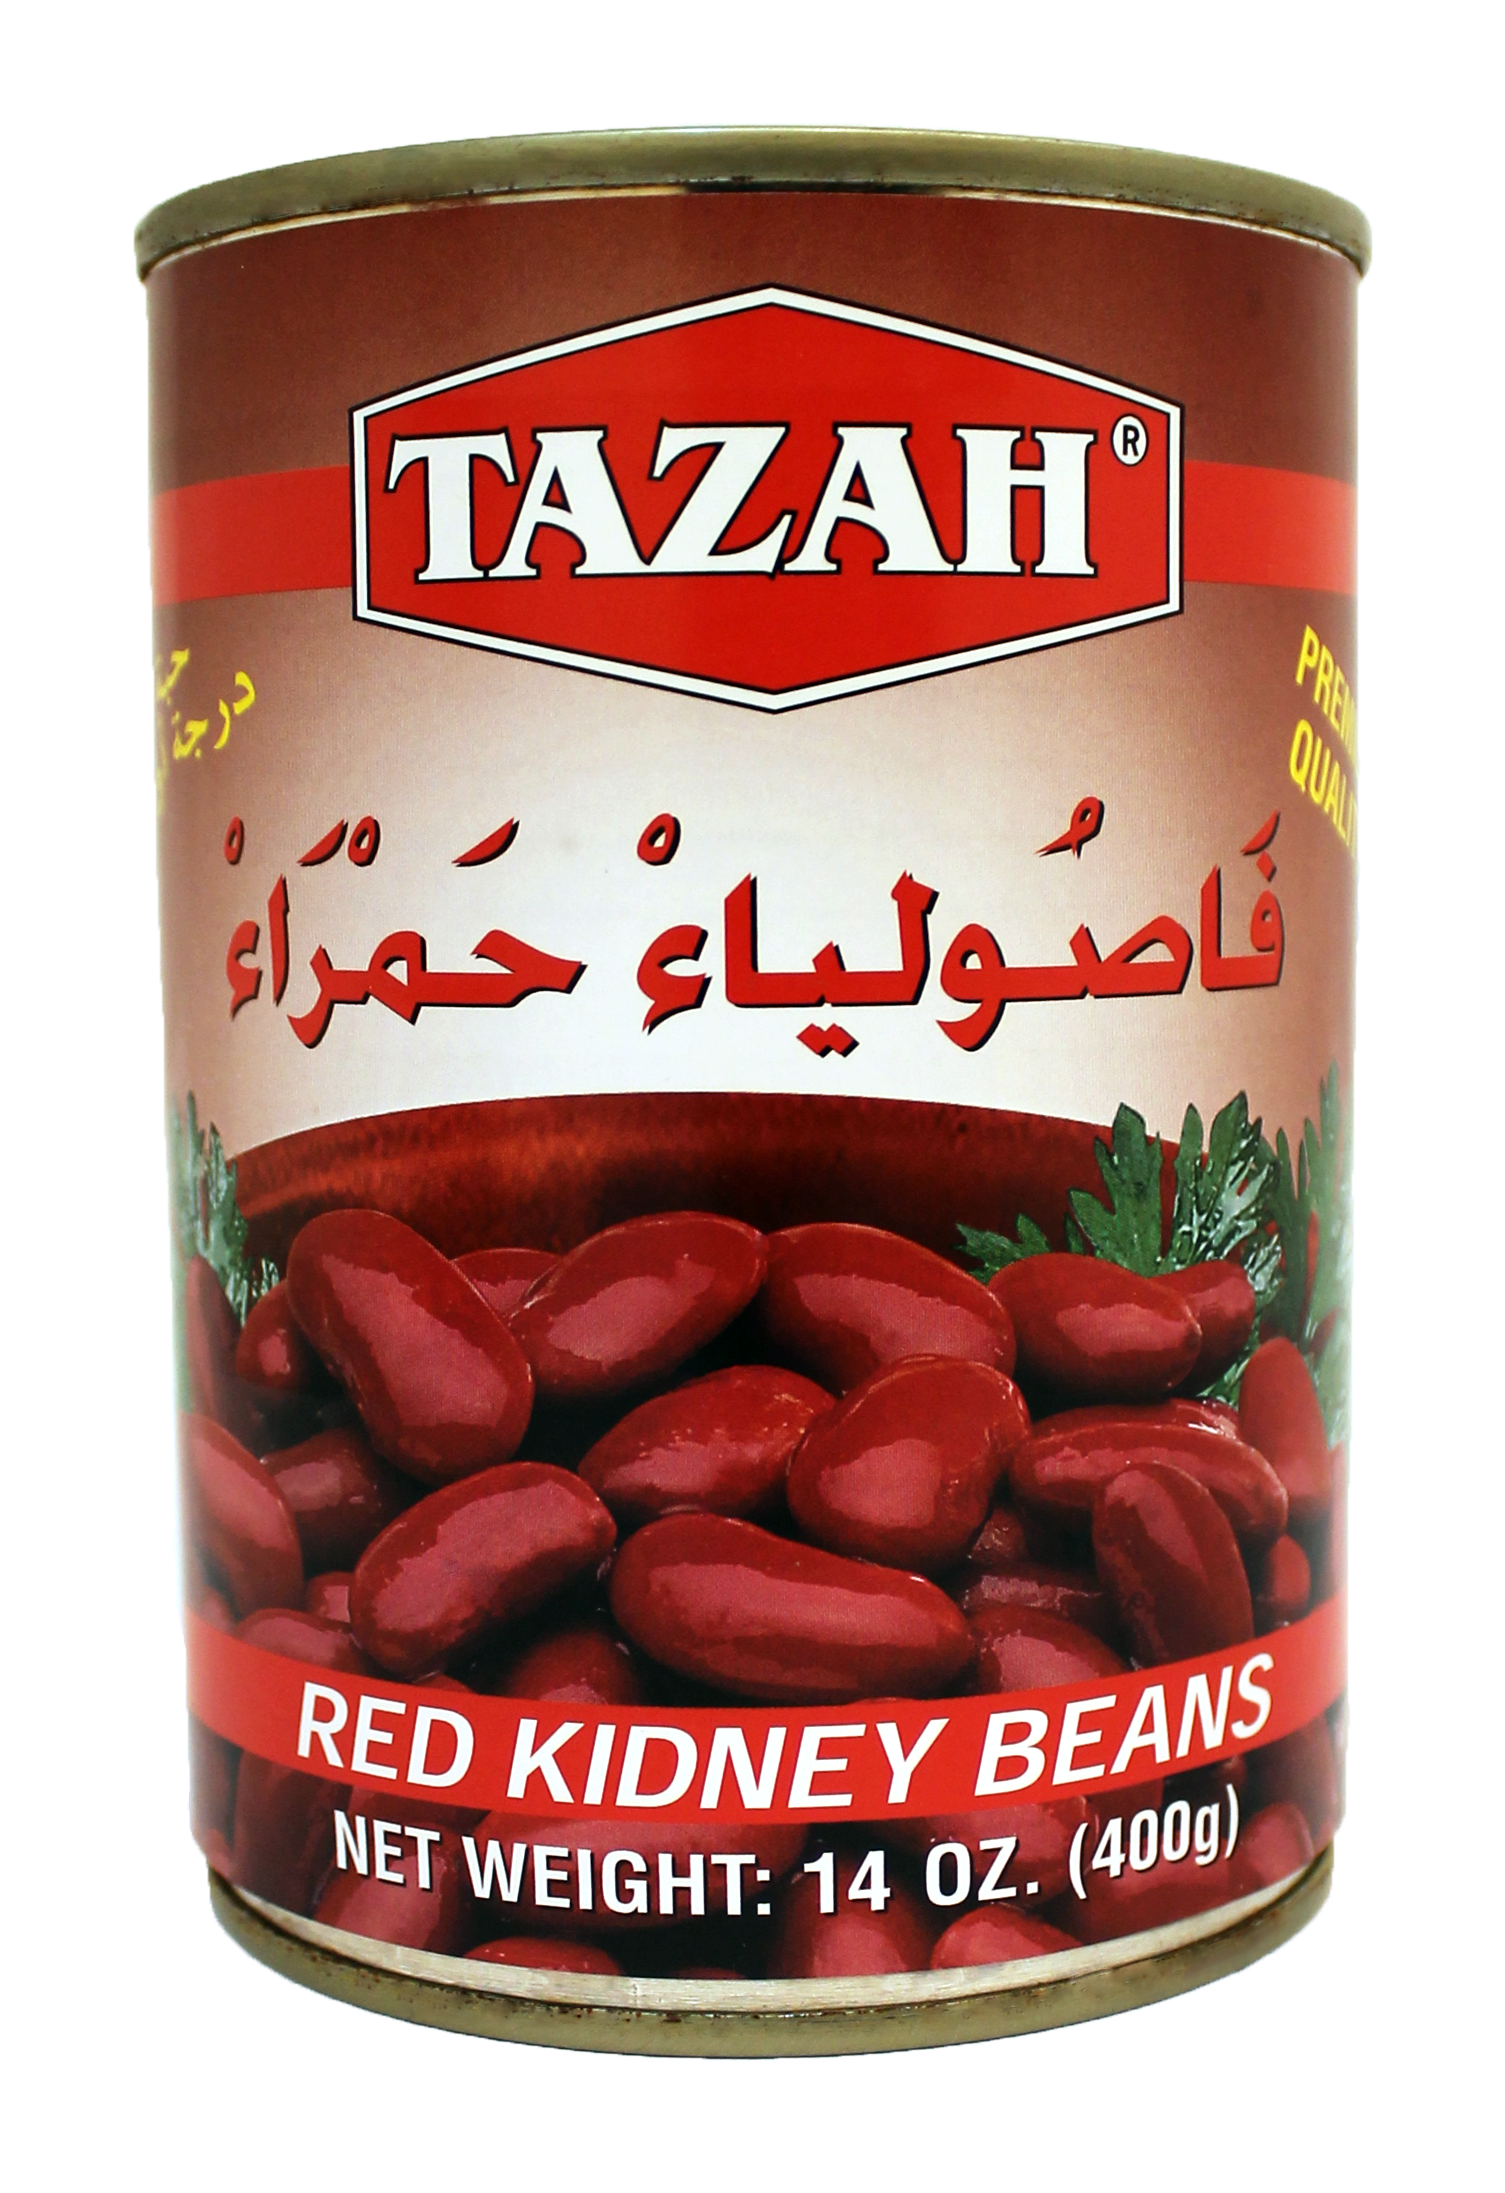 TAZAH RED KIDNEY BEANS